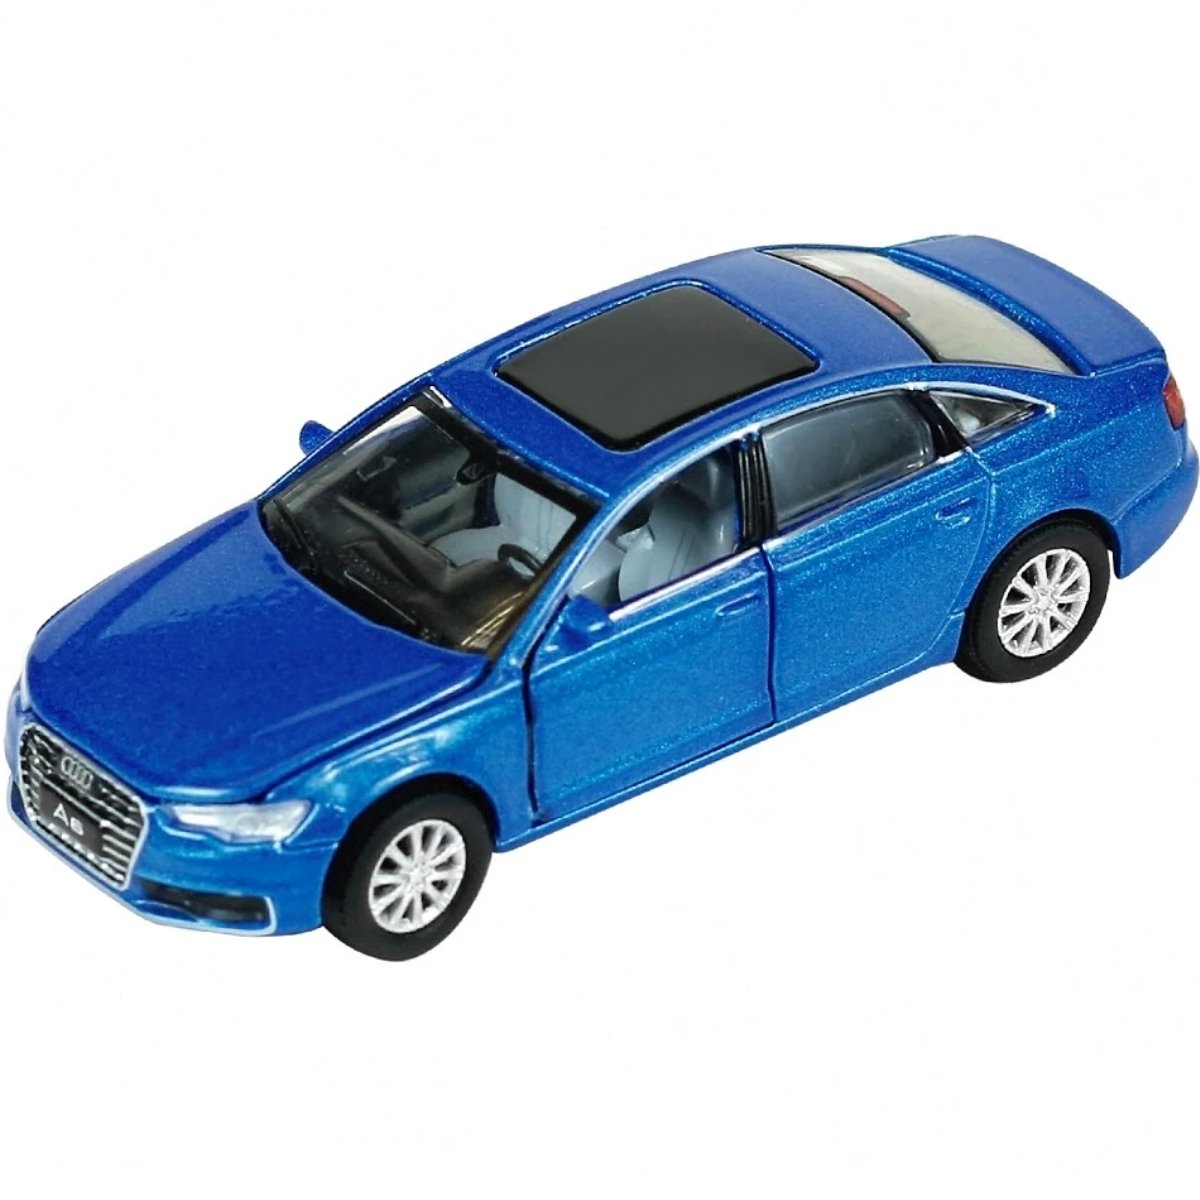 Era Car Audi A6 Blue (1:64 Scale)